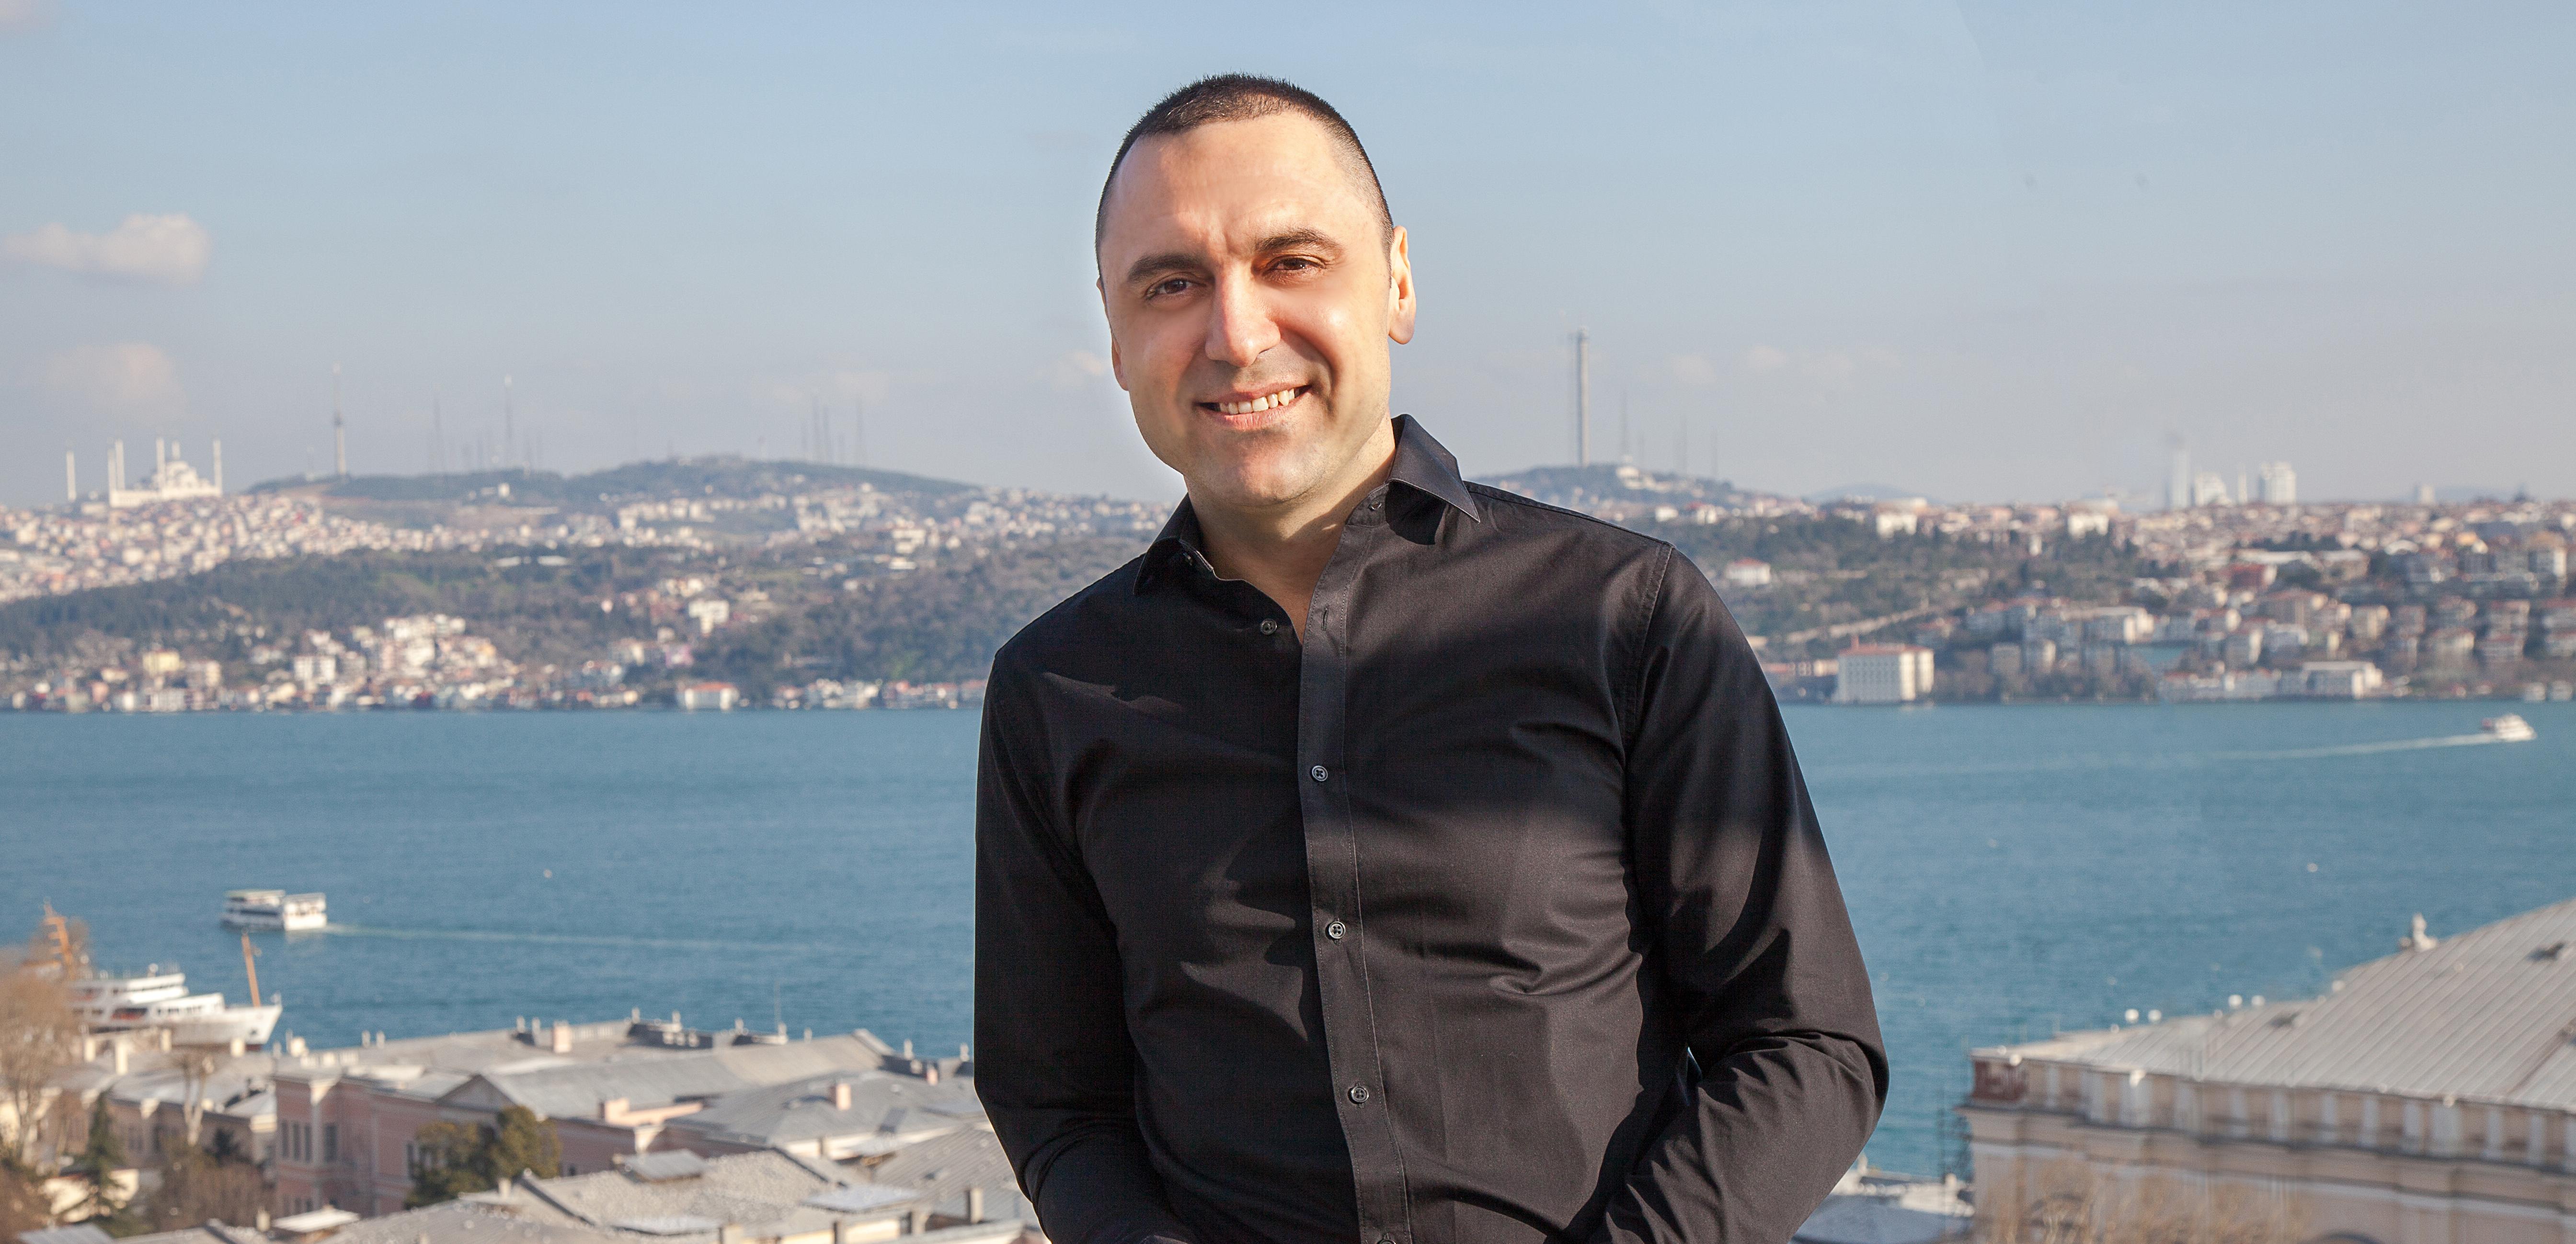 Aytaç Özçiçek: “Türkiye’nin en iyi kiralama ve yönetim şirketi olma iddiasıyla ilerliyoruz.”